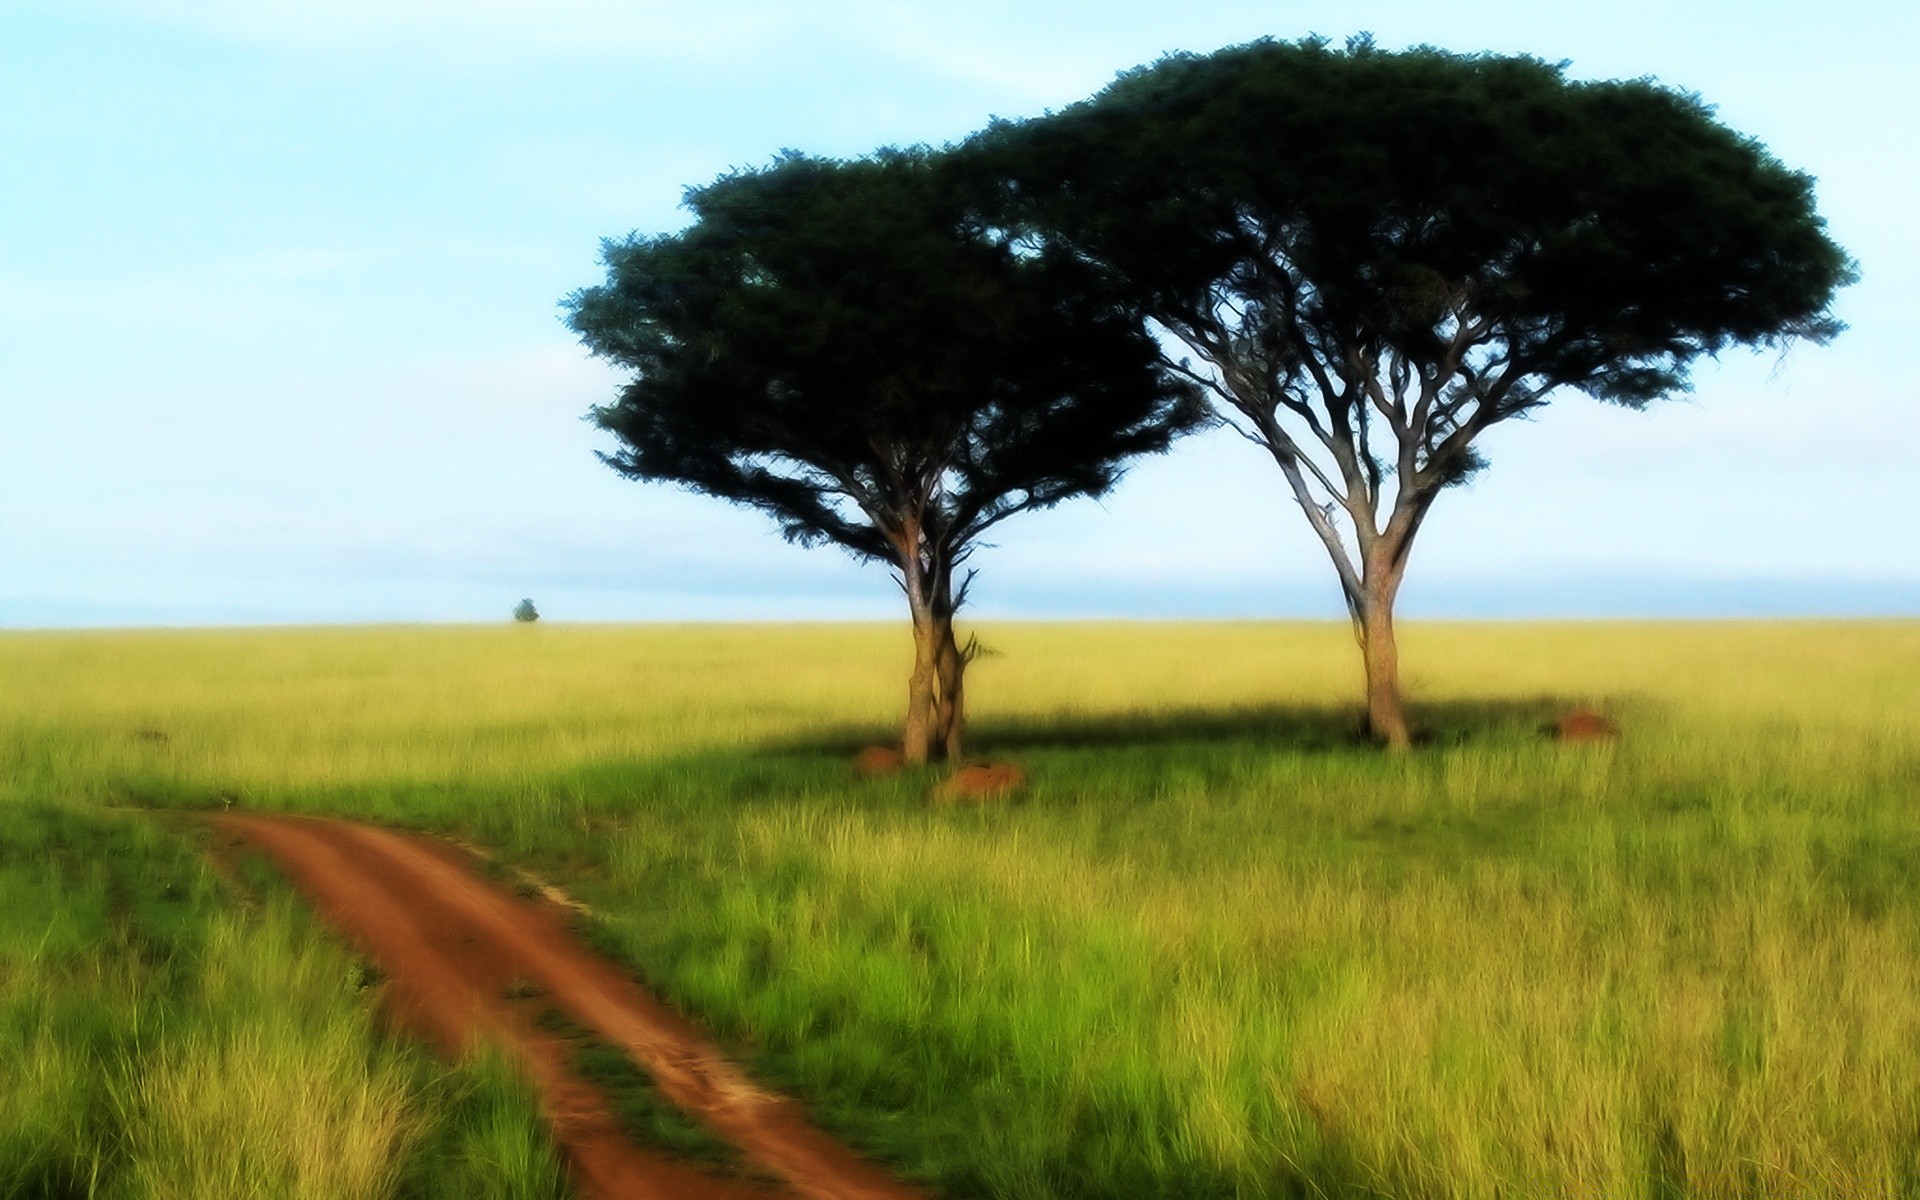 креатив пейзаж дерево трава природа поле на открытом воздухе возделываемые земли сельской местности небо сельских сенокос